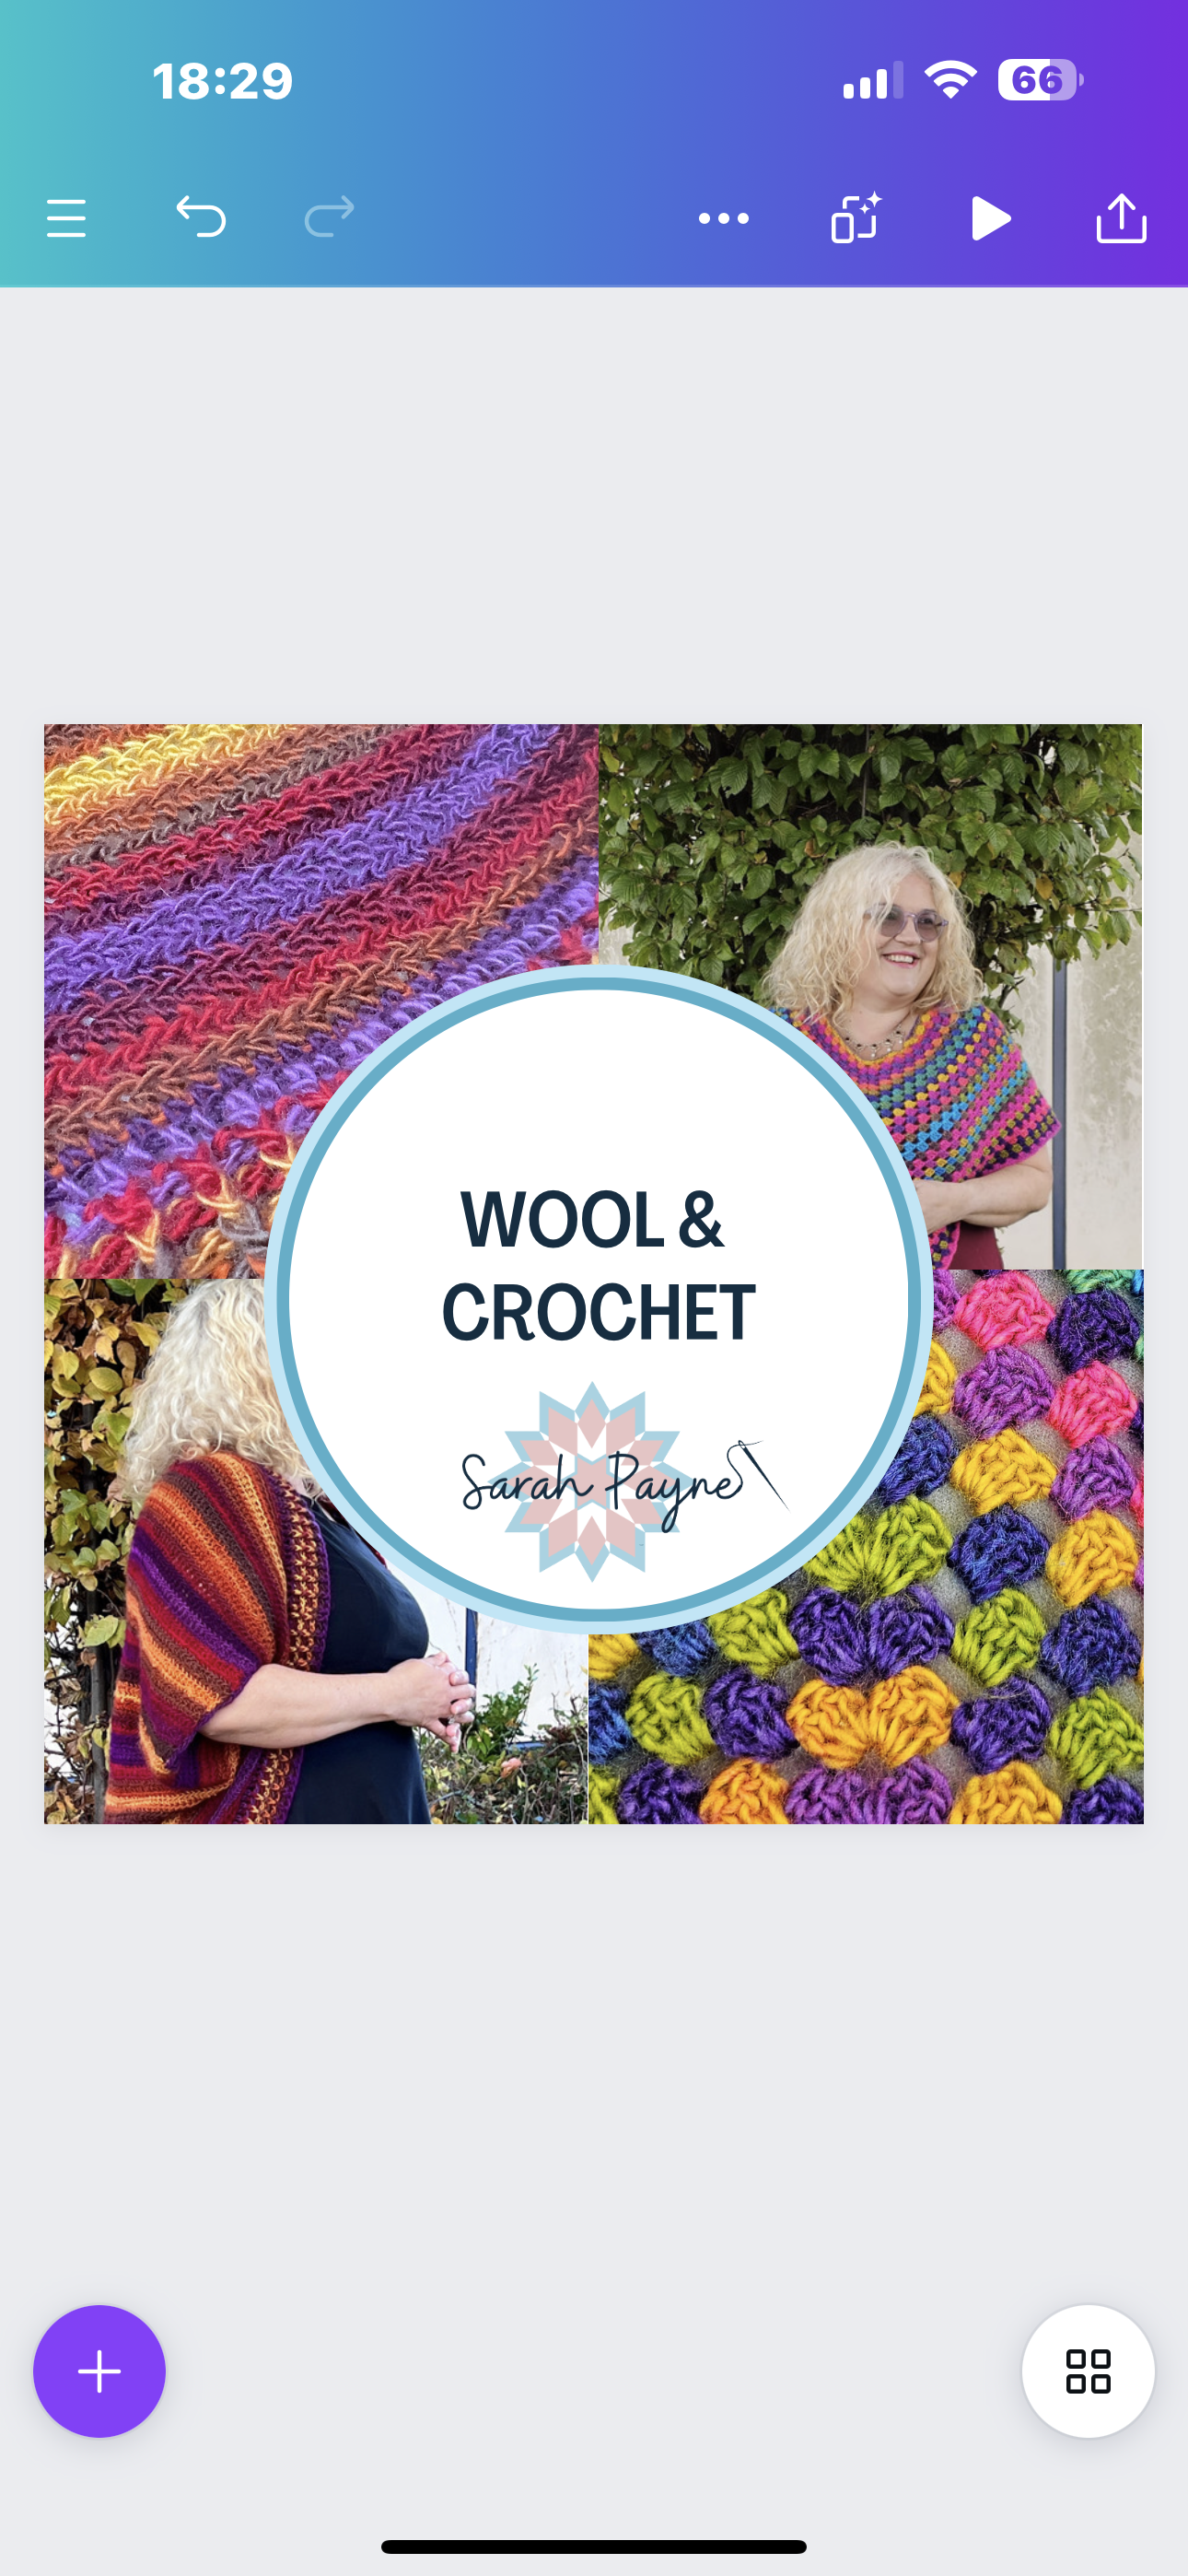 **Wool & Crochet**